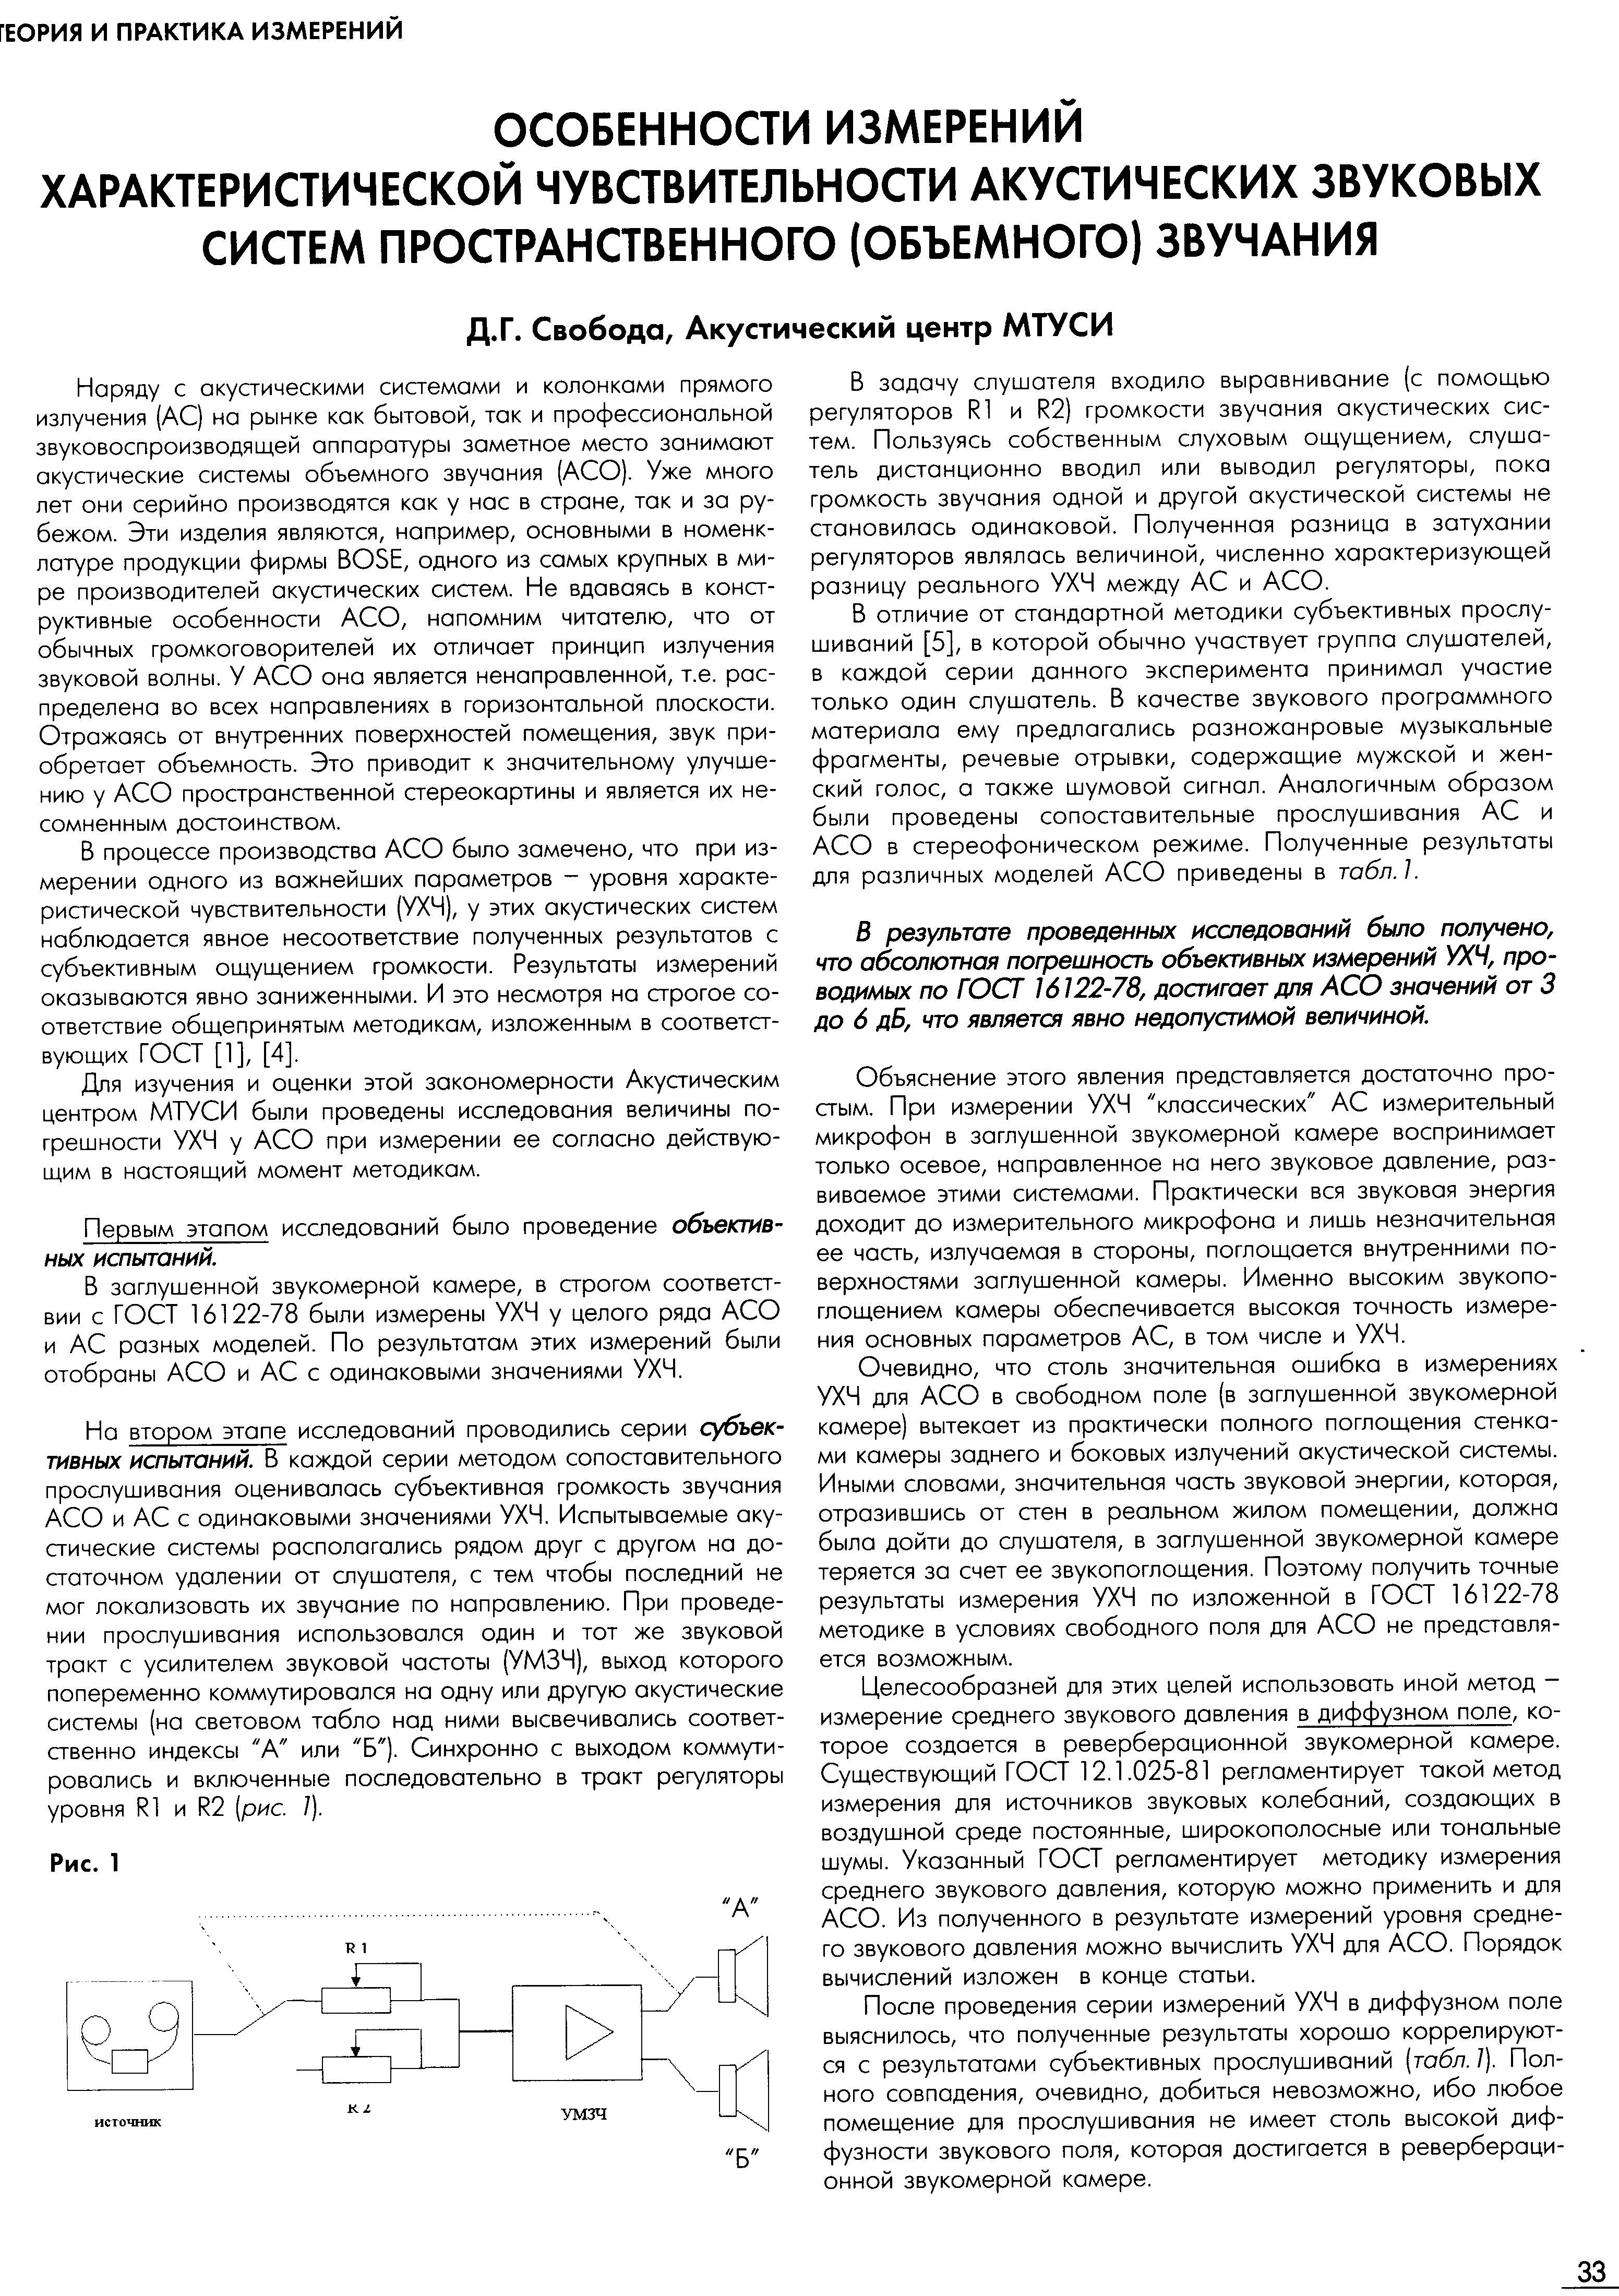 img023.pdf